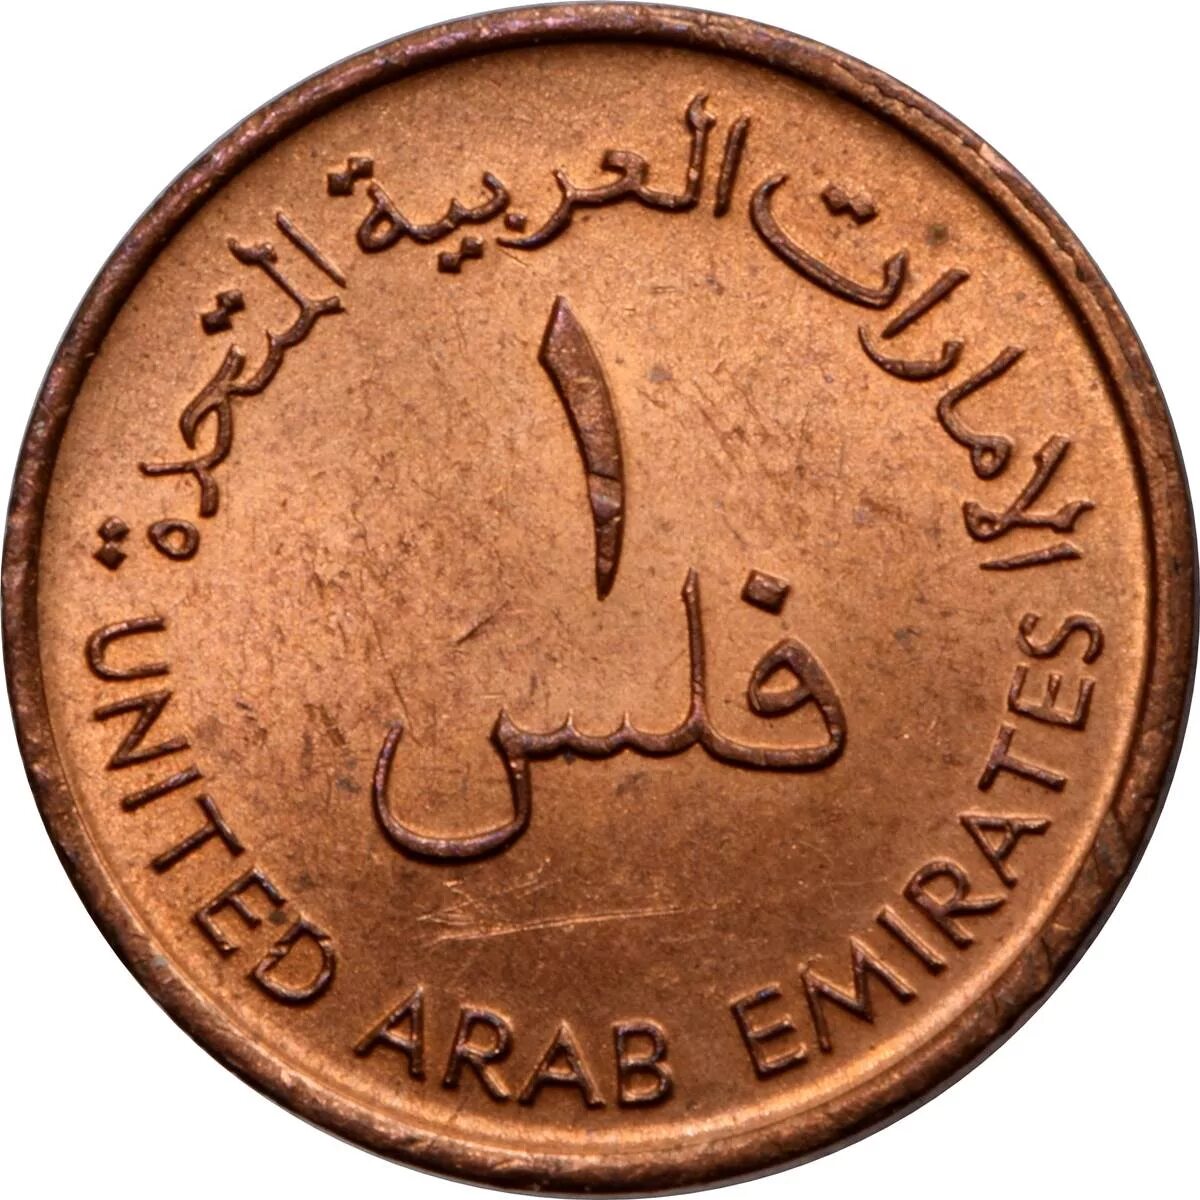 Uae 1. Юнайтед араб эмиратес монета. Монета United arab Emirates 2007 1428. United arab Emirates монета 1. Монета 1377 года United arab Emirates.